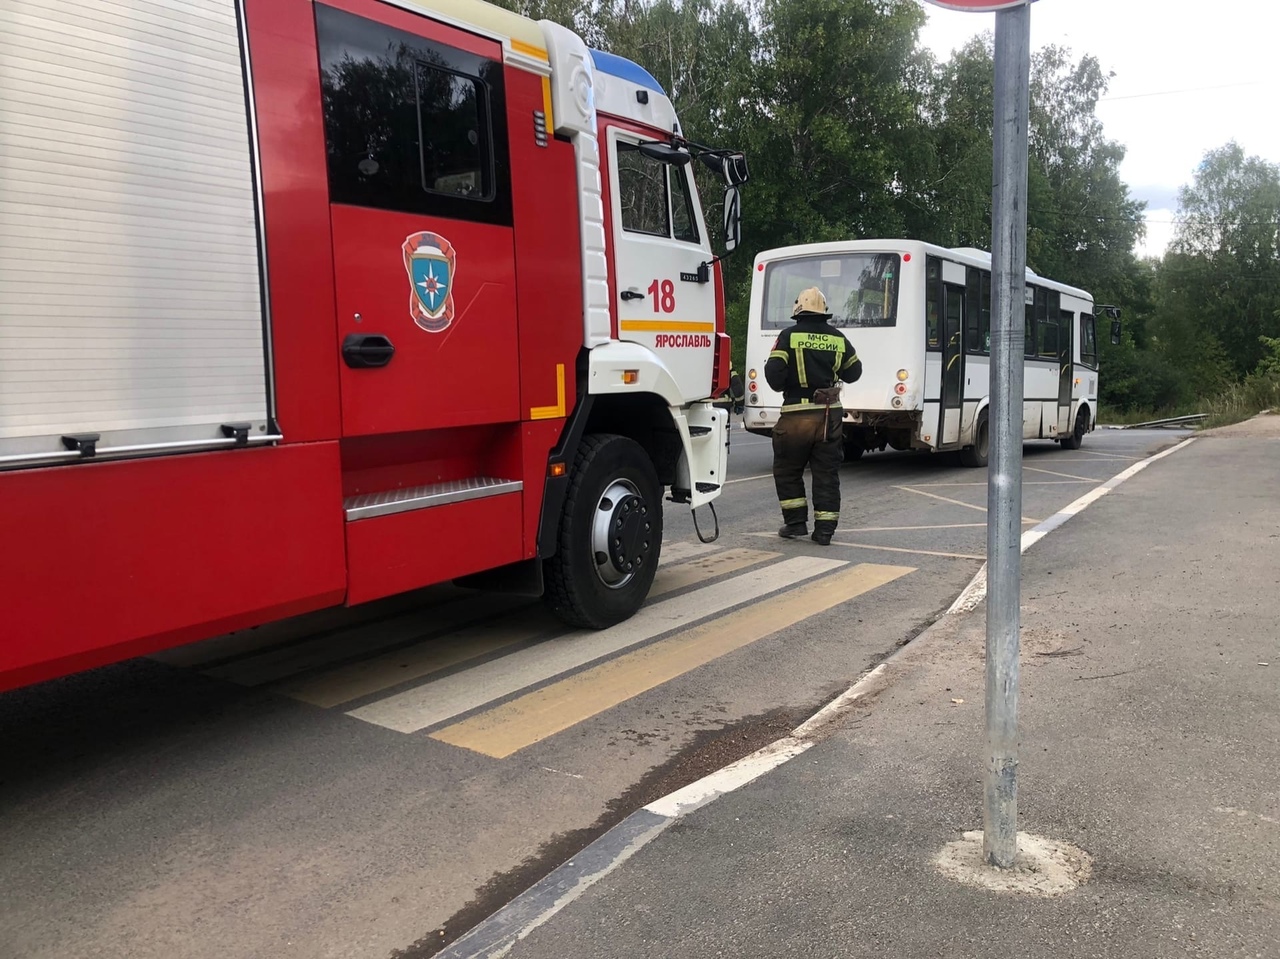 "Так себе приключение": в Ярославле на ходу вспыхнул автобус с людьми